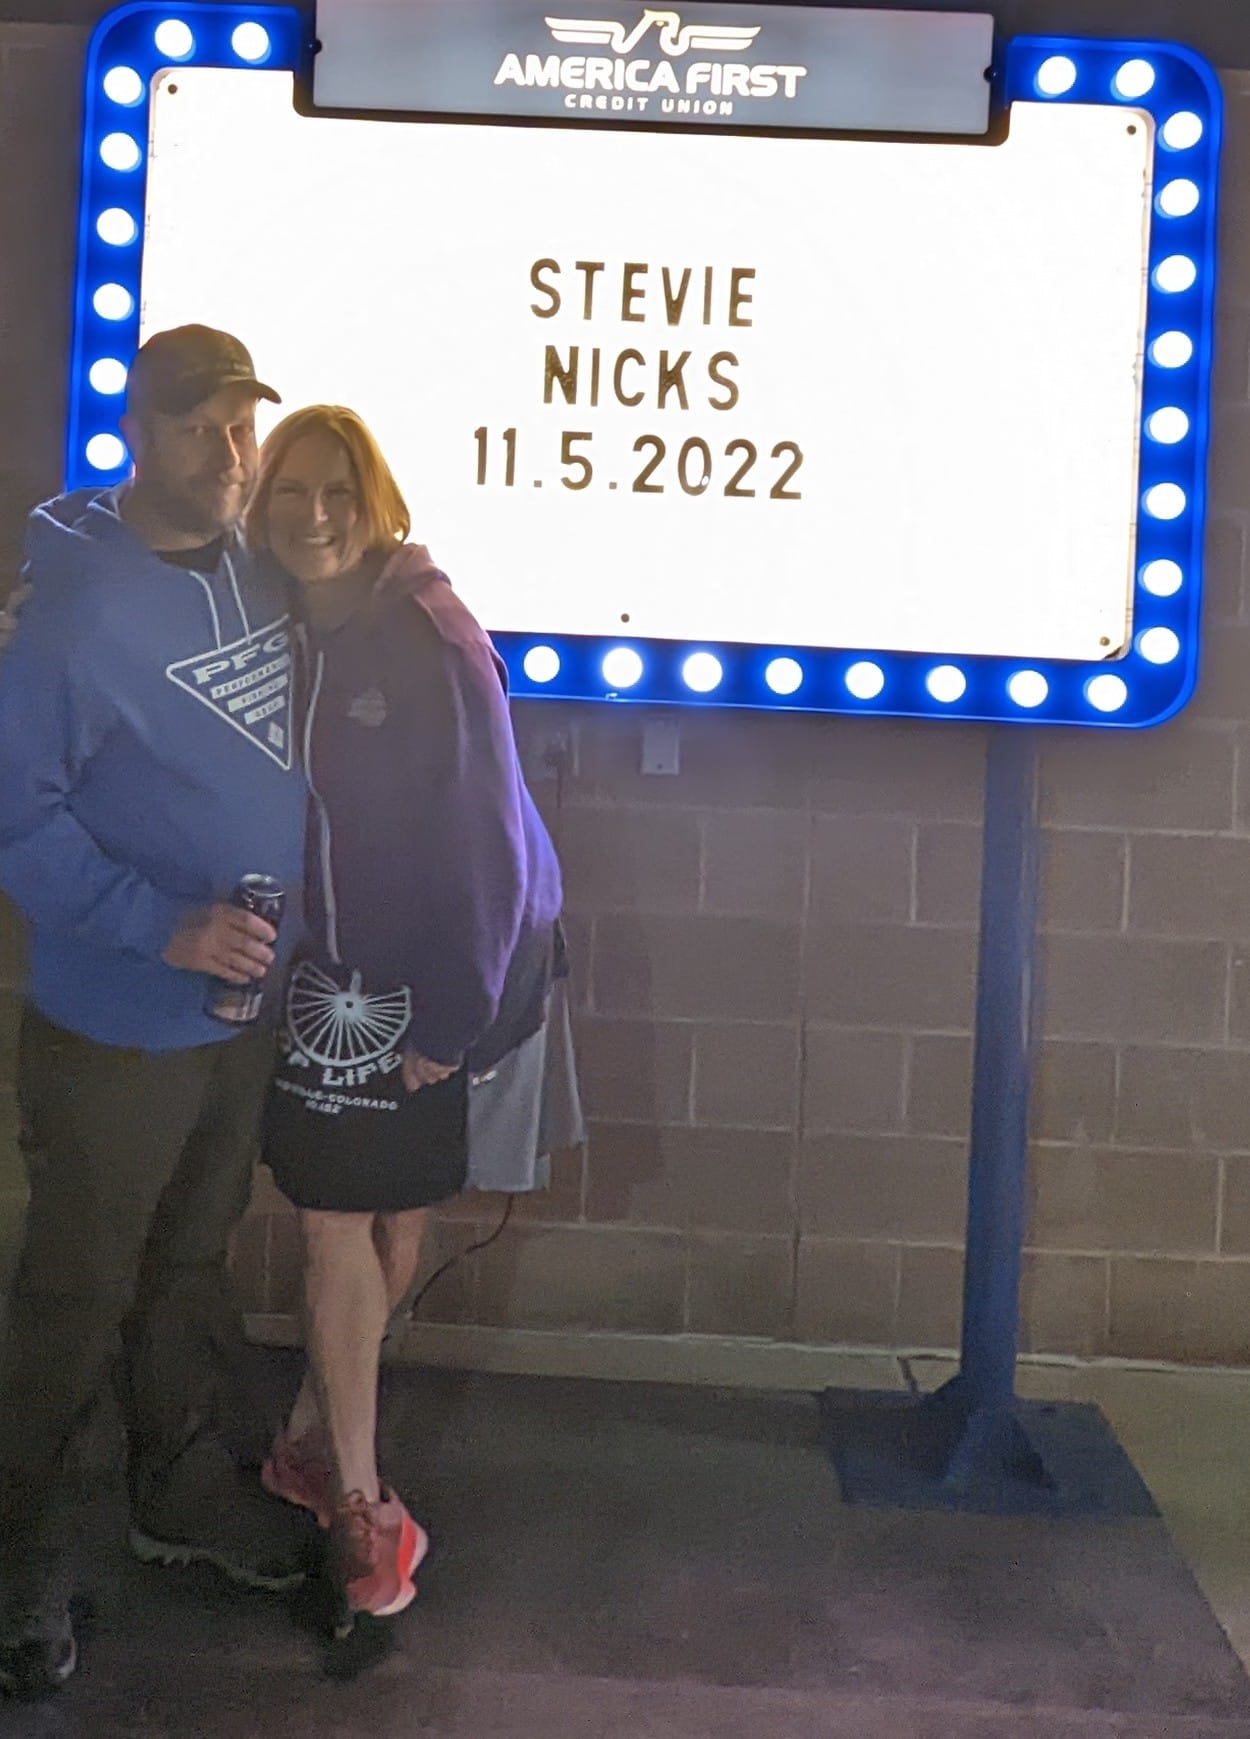 Brett and Laurel pose outside of the Stevie Nicks concert.